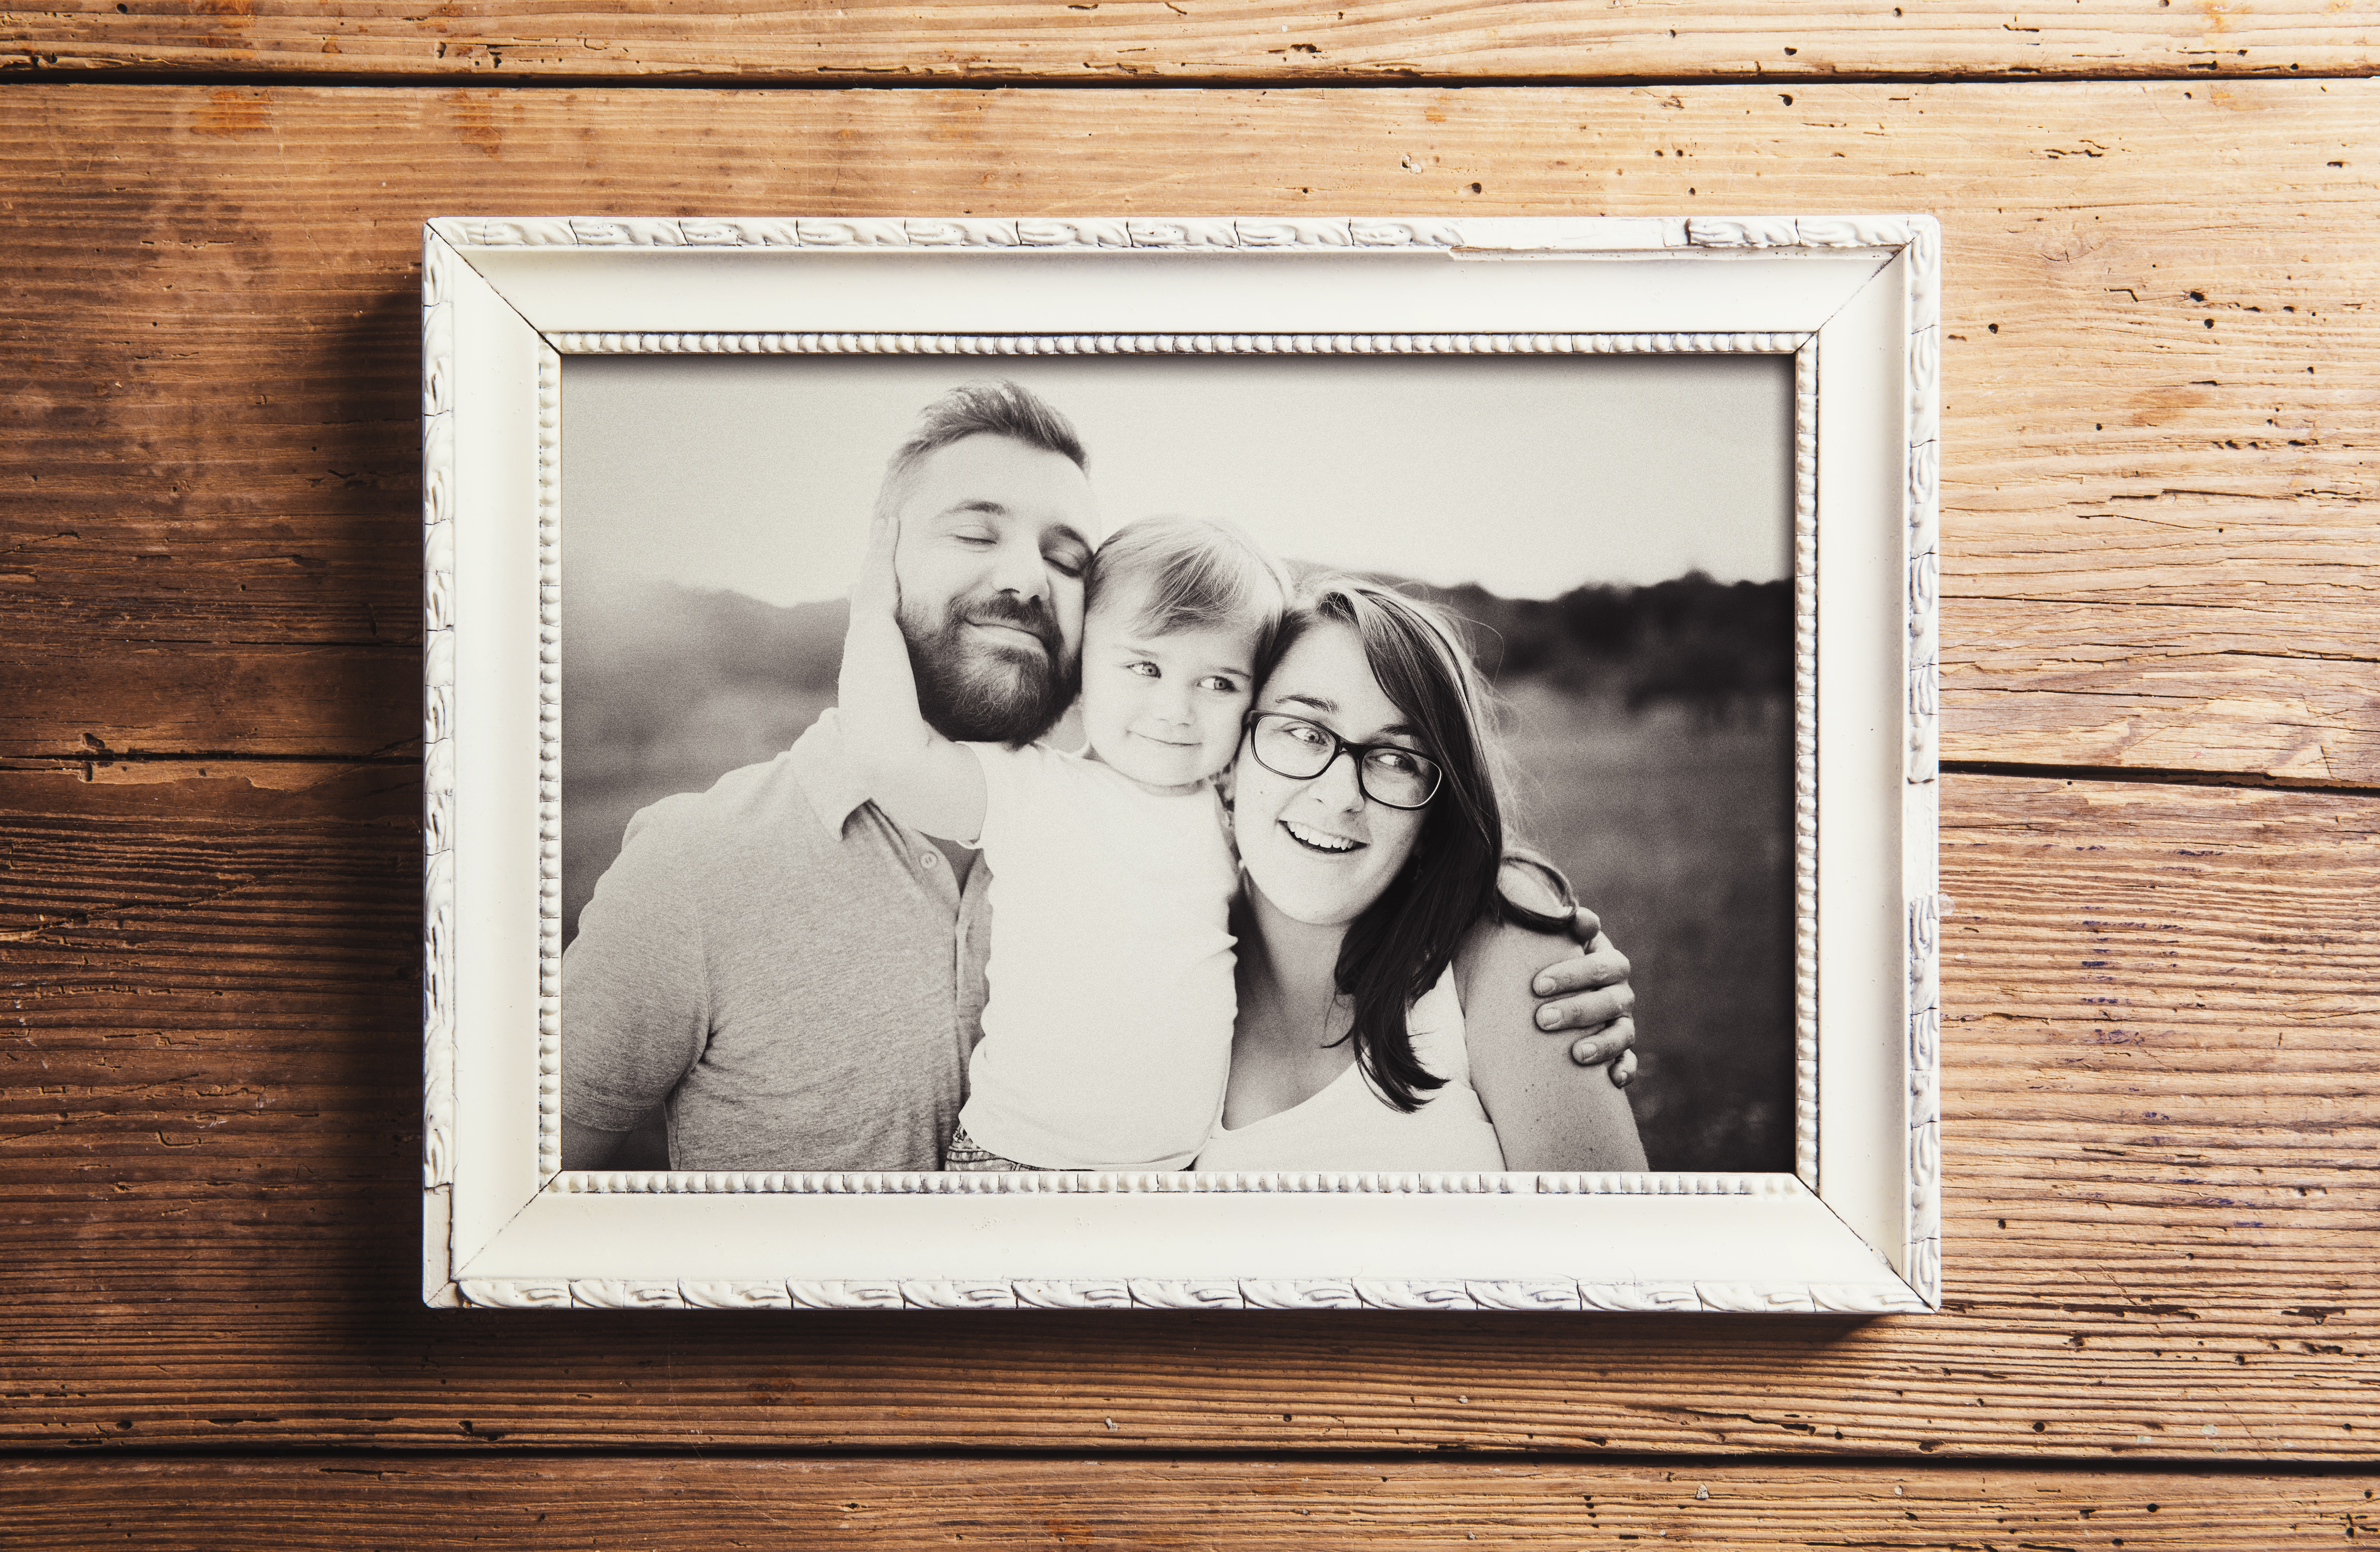 Une photographie en niveaux de gris d'une famille de trois personnes dans un cadre en bois | Source : Shutterstock